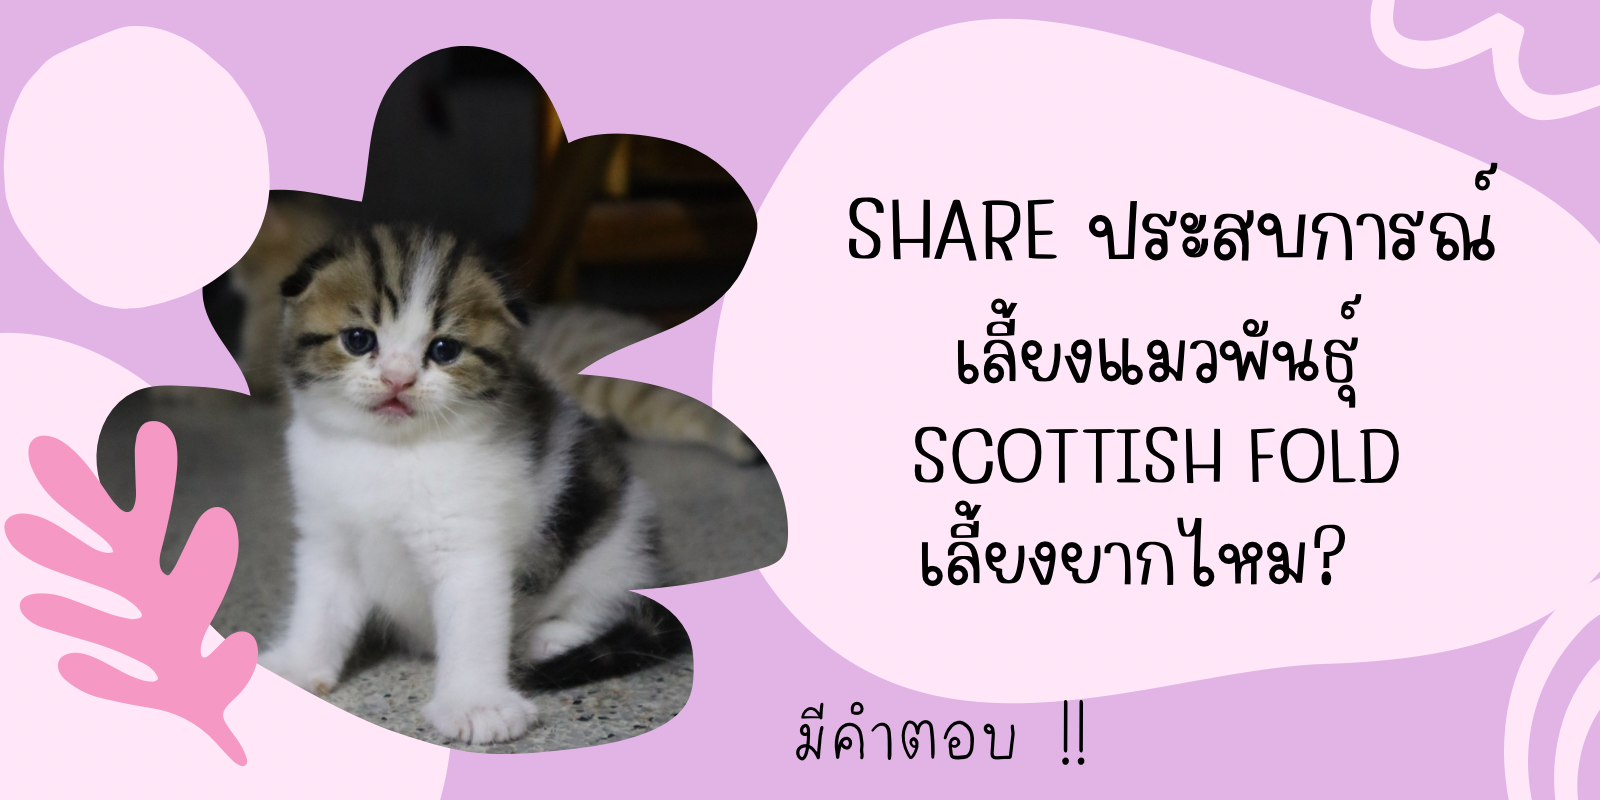 แชร์ประสบการณ์เลี้ยงแมวพันธุ์ Scottish Fold เลี้ยงยากไหม?!? มีคำตอบ